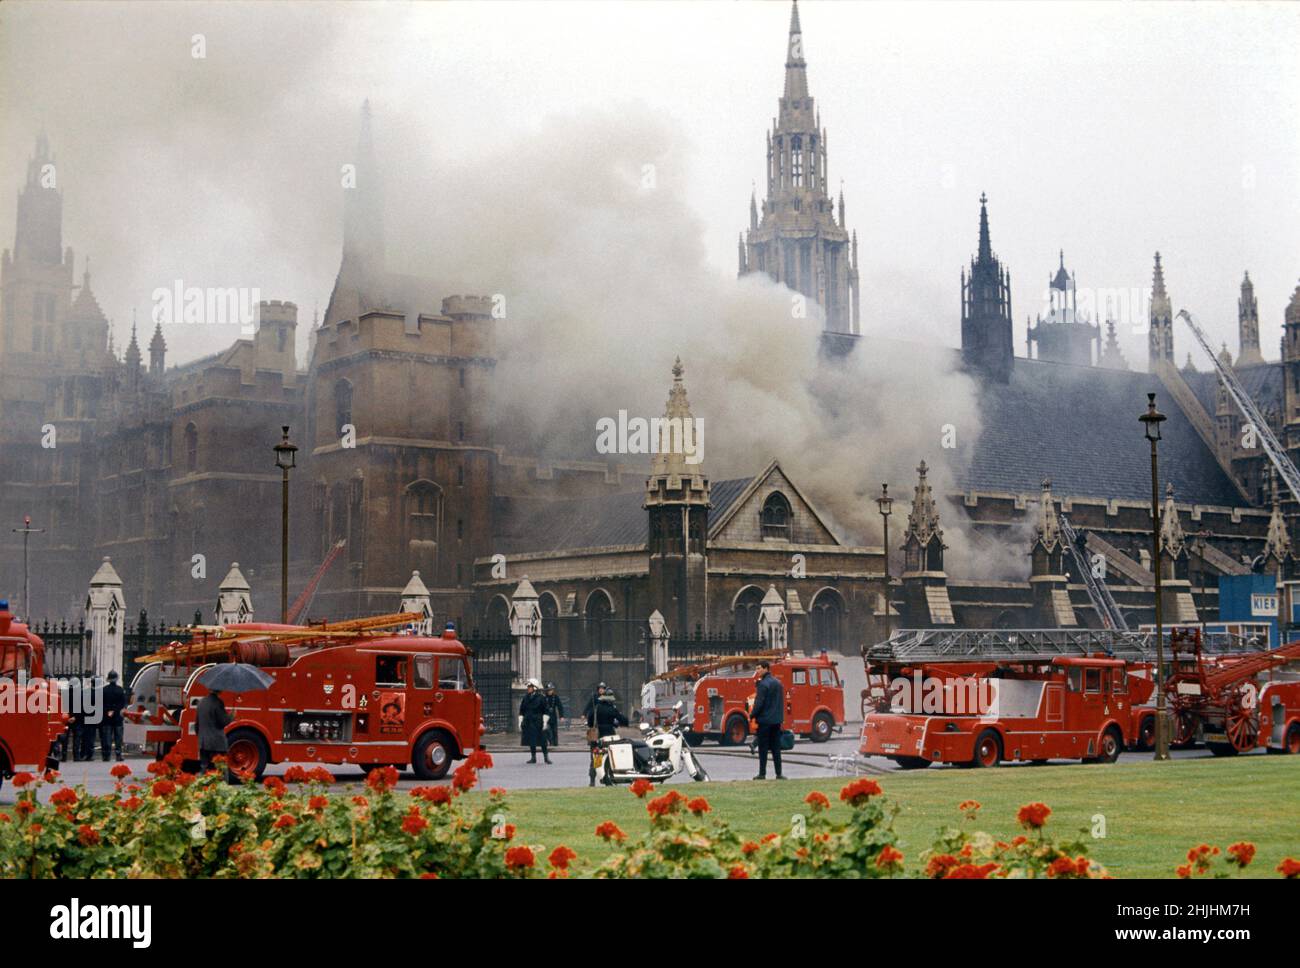 1974: Aktenfoto vom 1974. Juni von den Rettungsdiensten, die einen Brand in der Westminster Hall bekämpfen, nachdem eine von der IRA hinterlassene Brandvorrichtung explodiert war. Ausgabedatum: Sonntag, 30. Januar 2022. Stockfoto